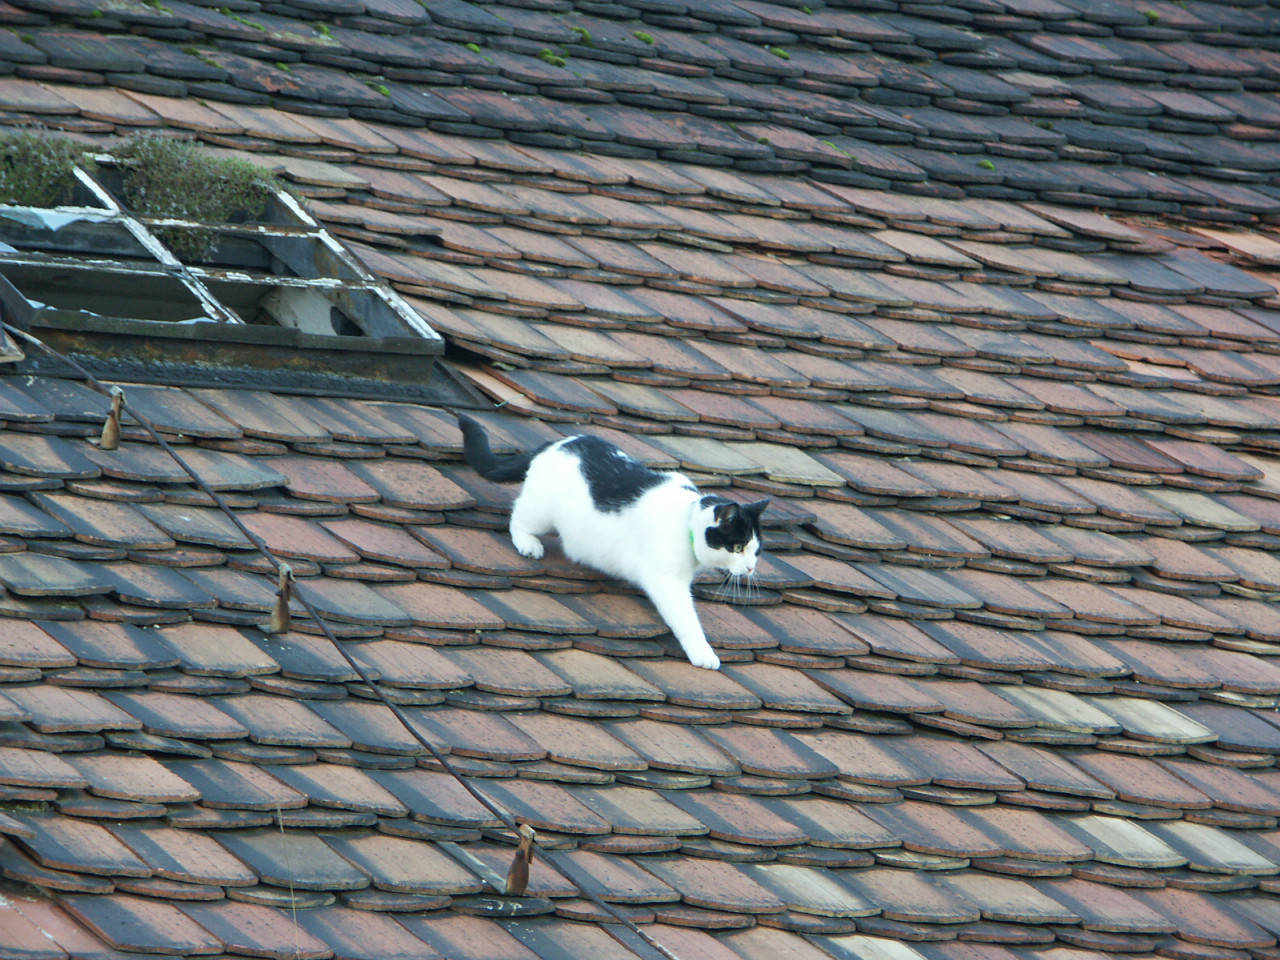 Katze auf dem heißen Wellblechdach